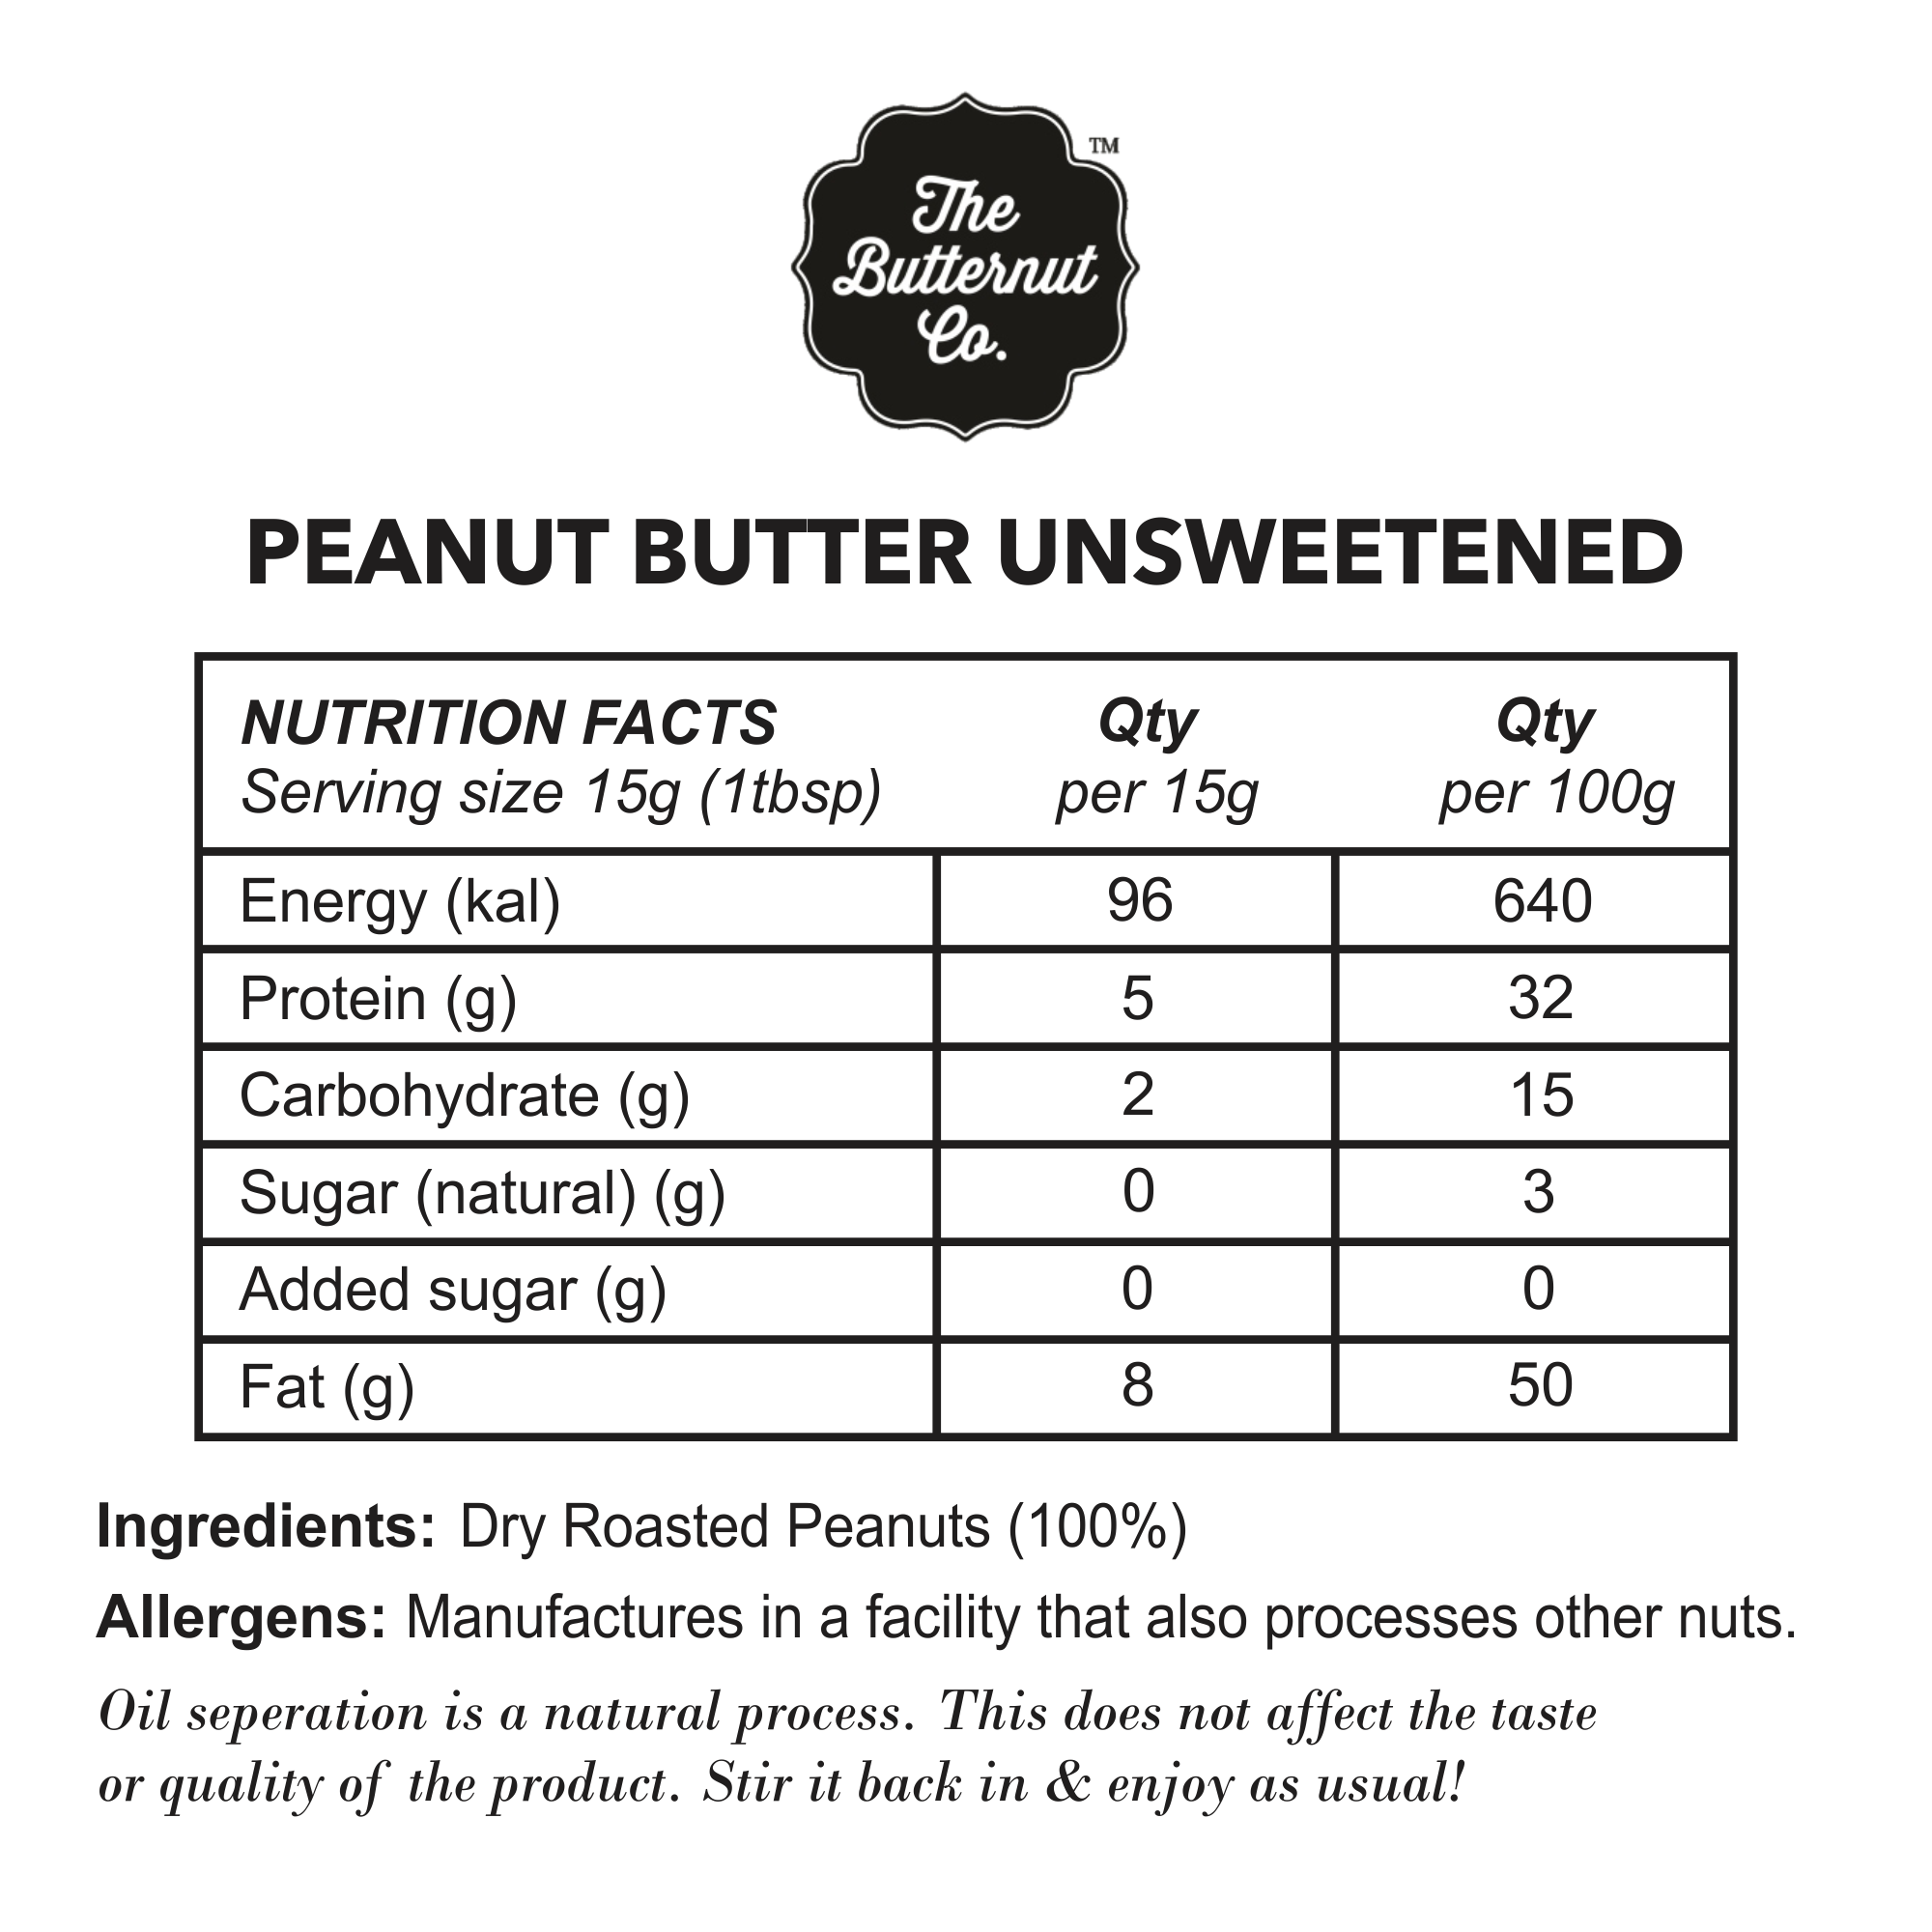 The Butternut Co. Unsweetened Peanut Butter